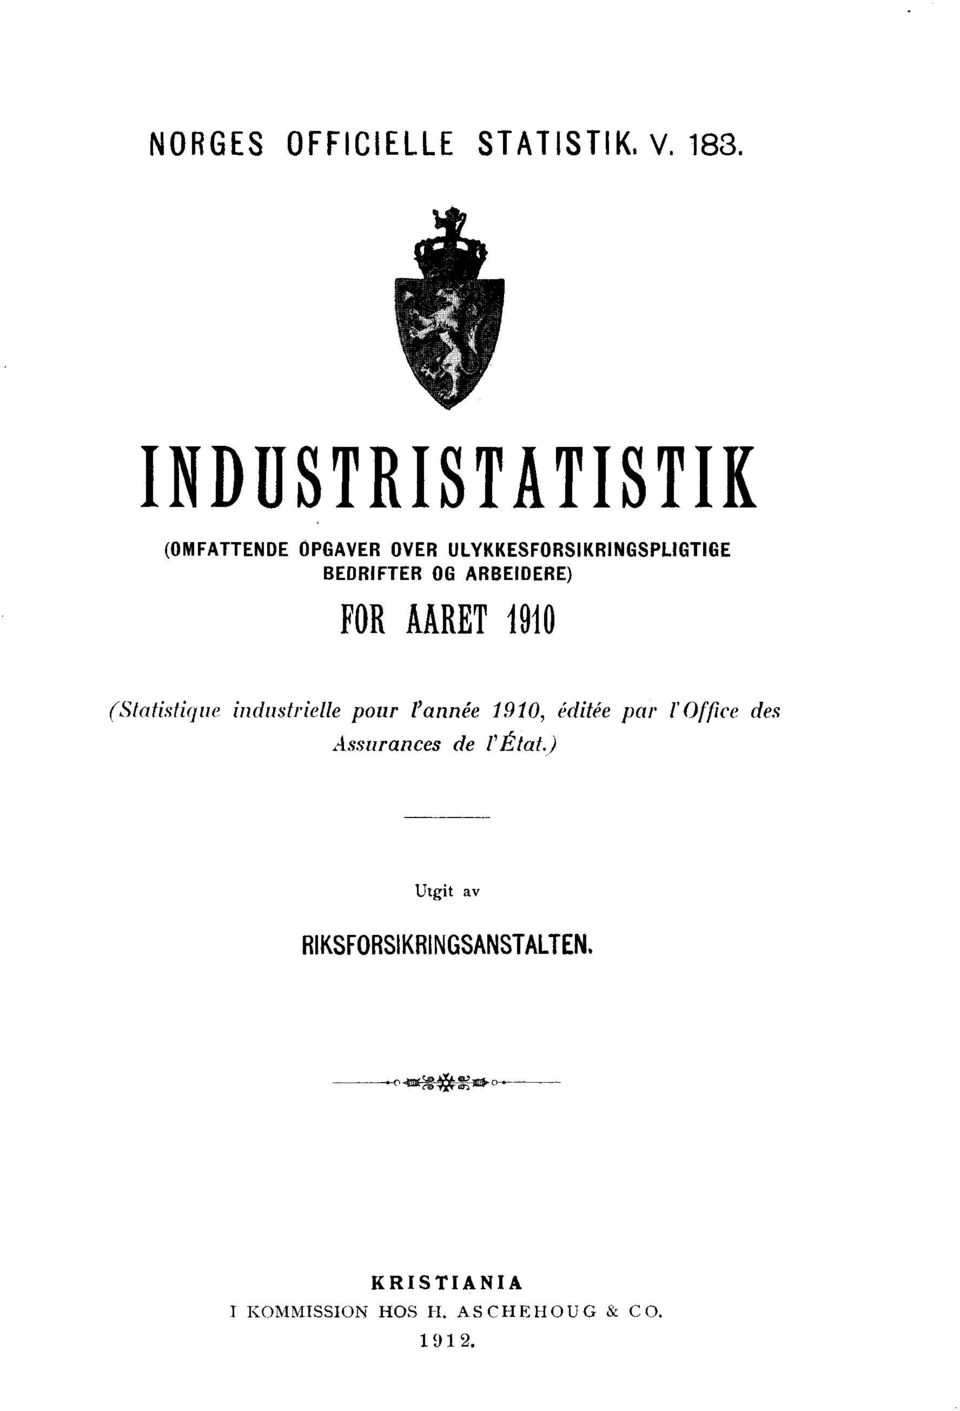 OG ARBEIDERE) FOR ARET 1910 (Statistique industrielle pour l'année 1910, éditée